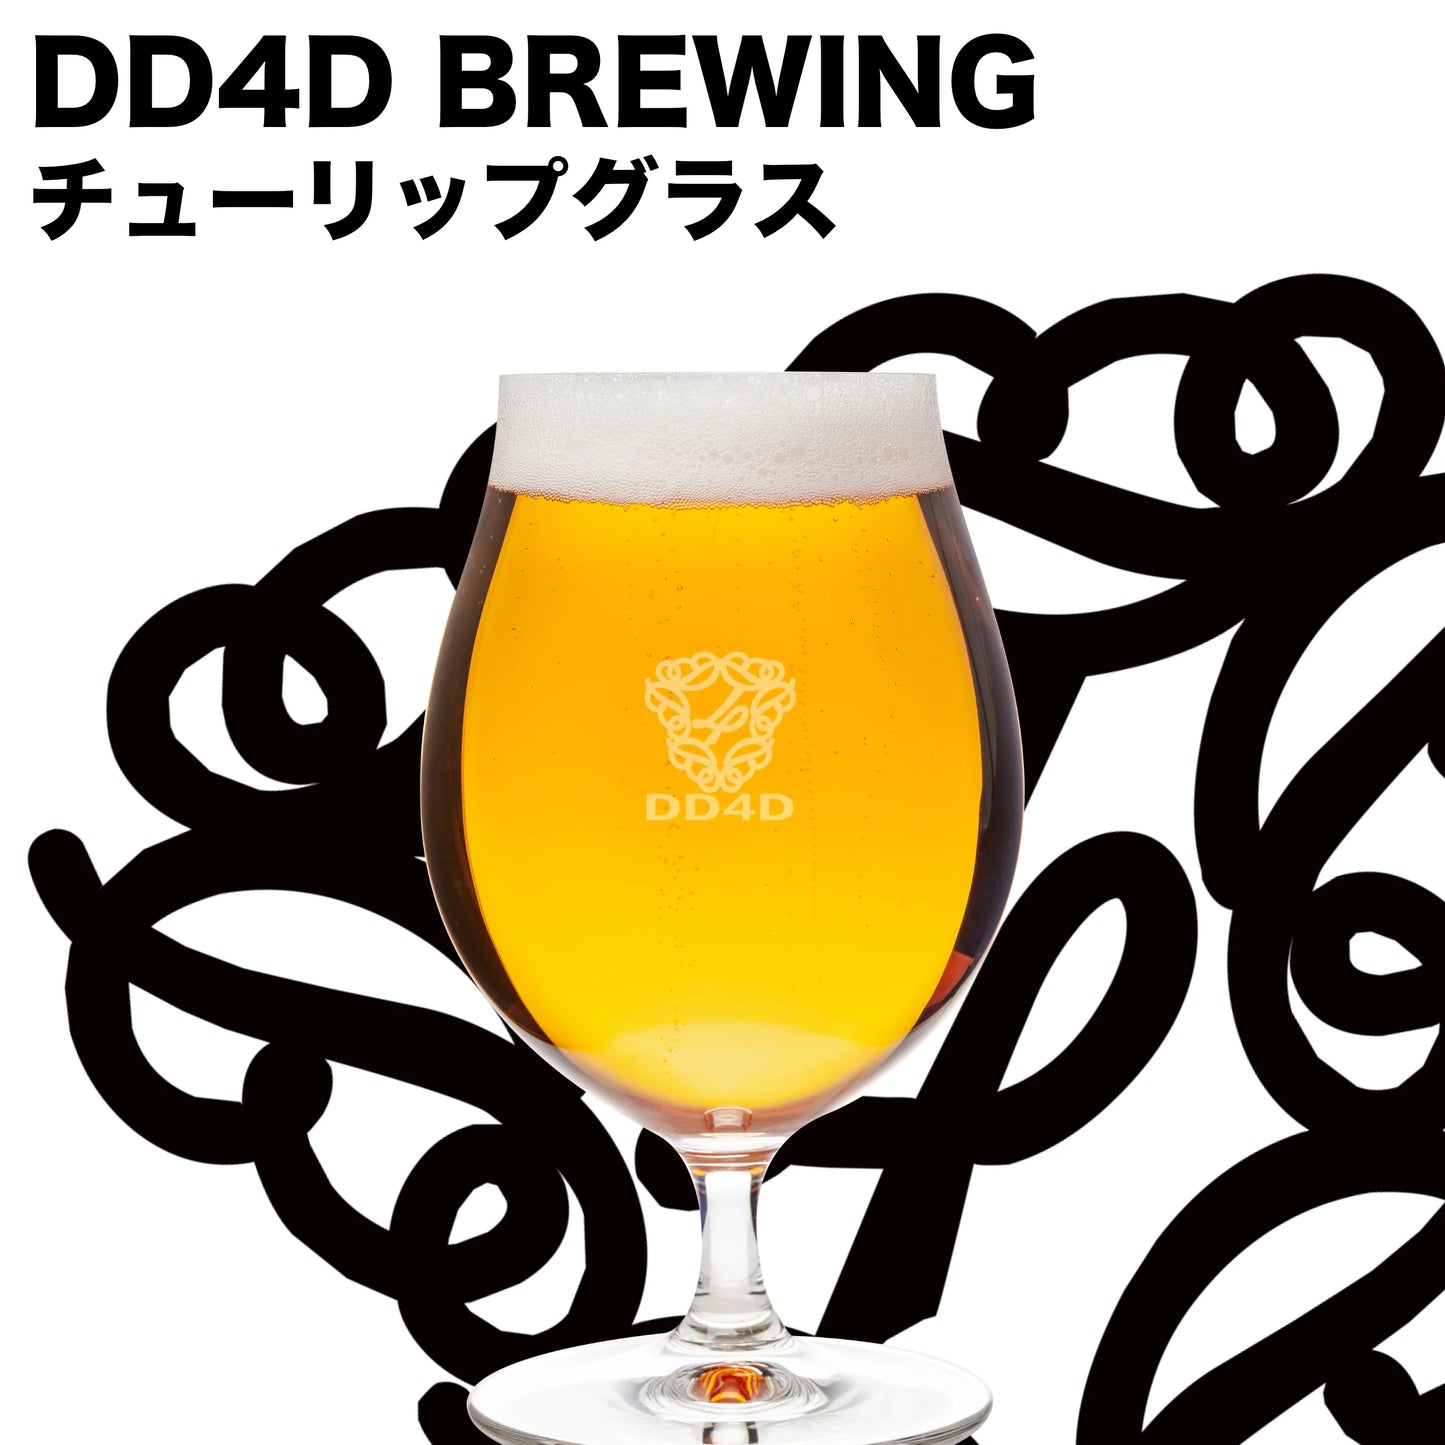 【お中元対応可】DD4D BREWING 4th Anniv. Beer Set - DELUXE